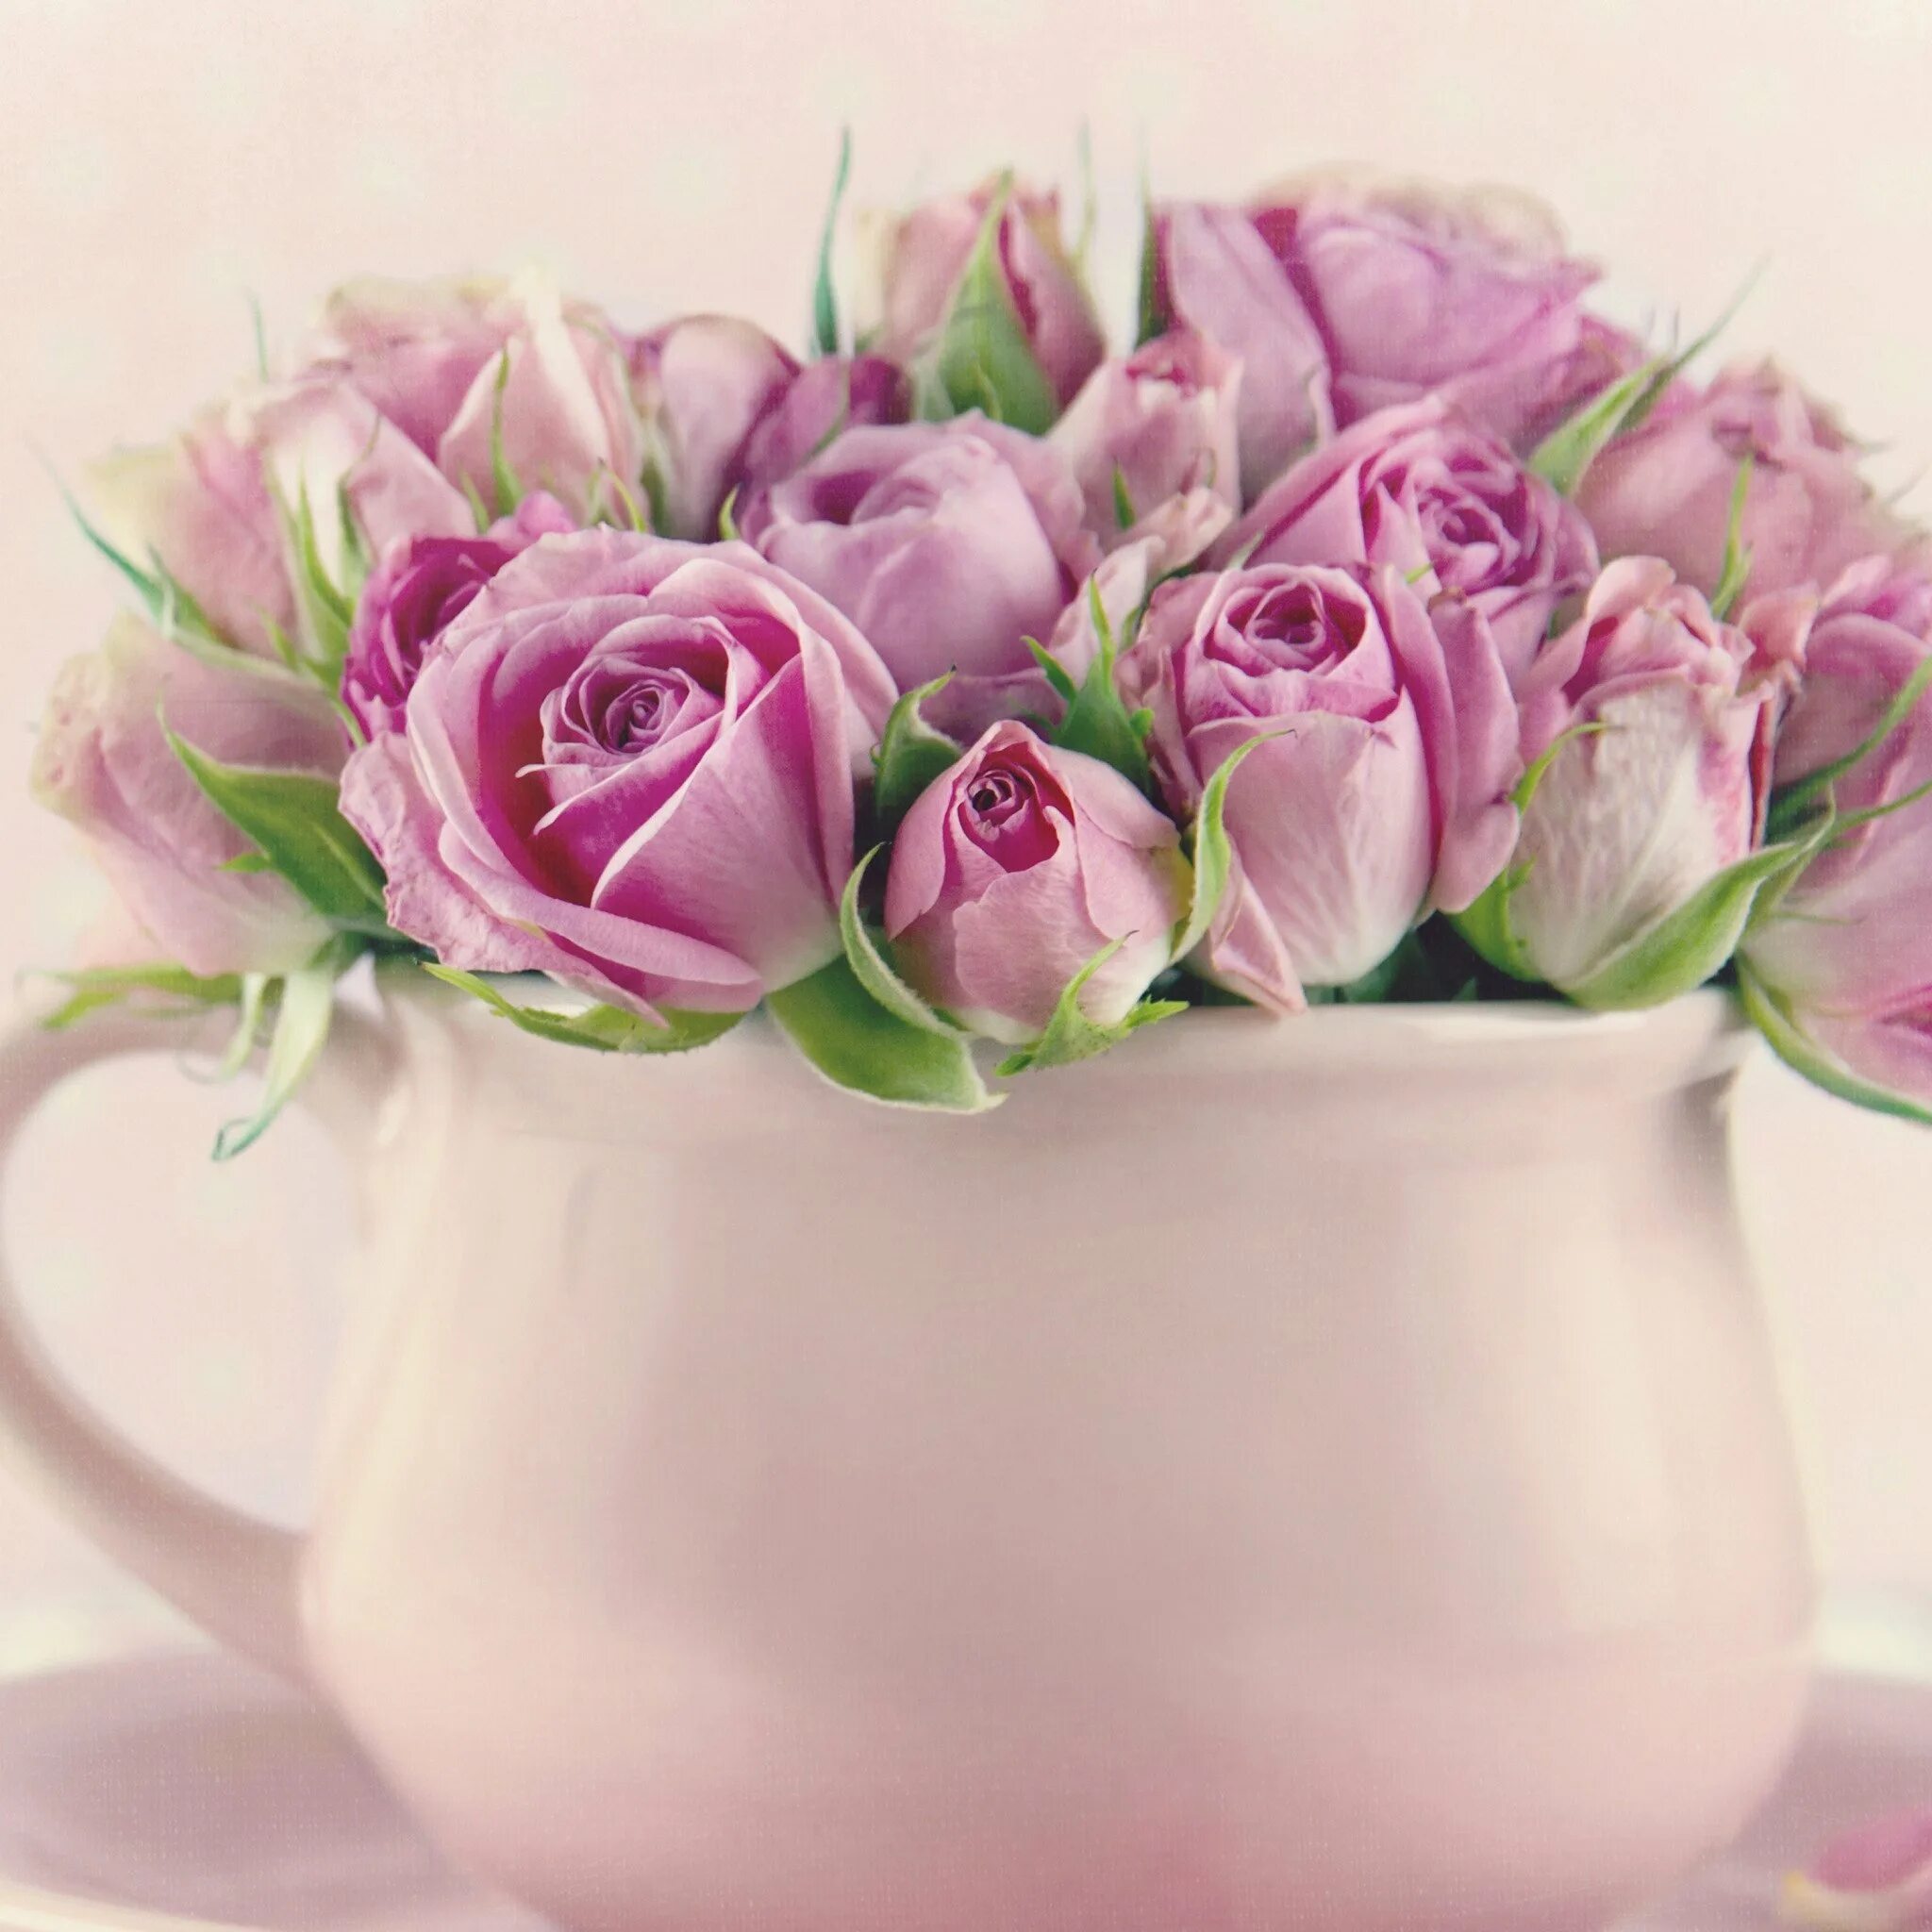 Пусть каждый ваш день будет наполнен радостью. Цветы в чашке. Открытки с добрым утром с цветами. С добрым утром цветы красивые. Красивый букет в чашке.